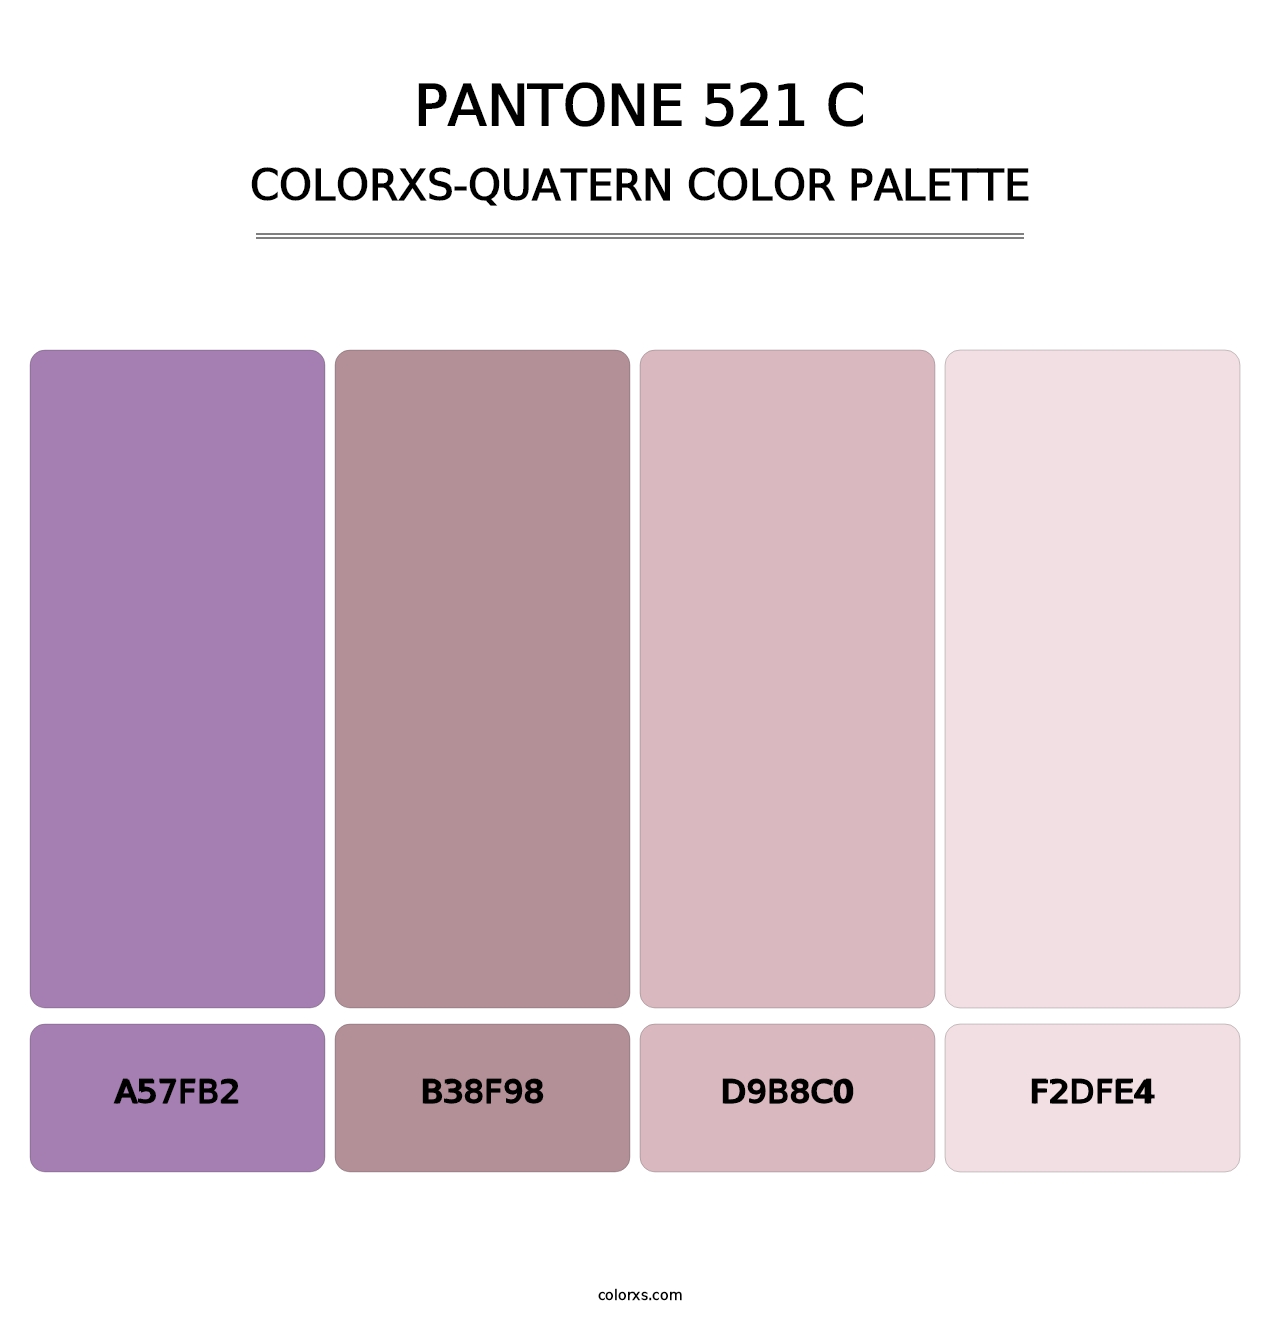 PANTONE 521 C - Colorxs Quatern Palette